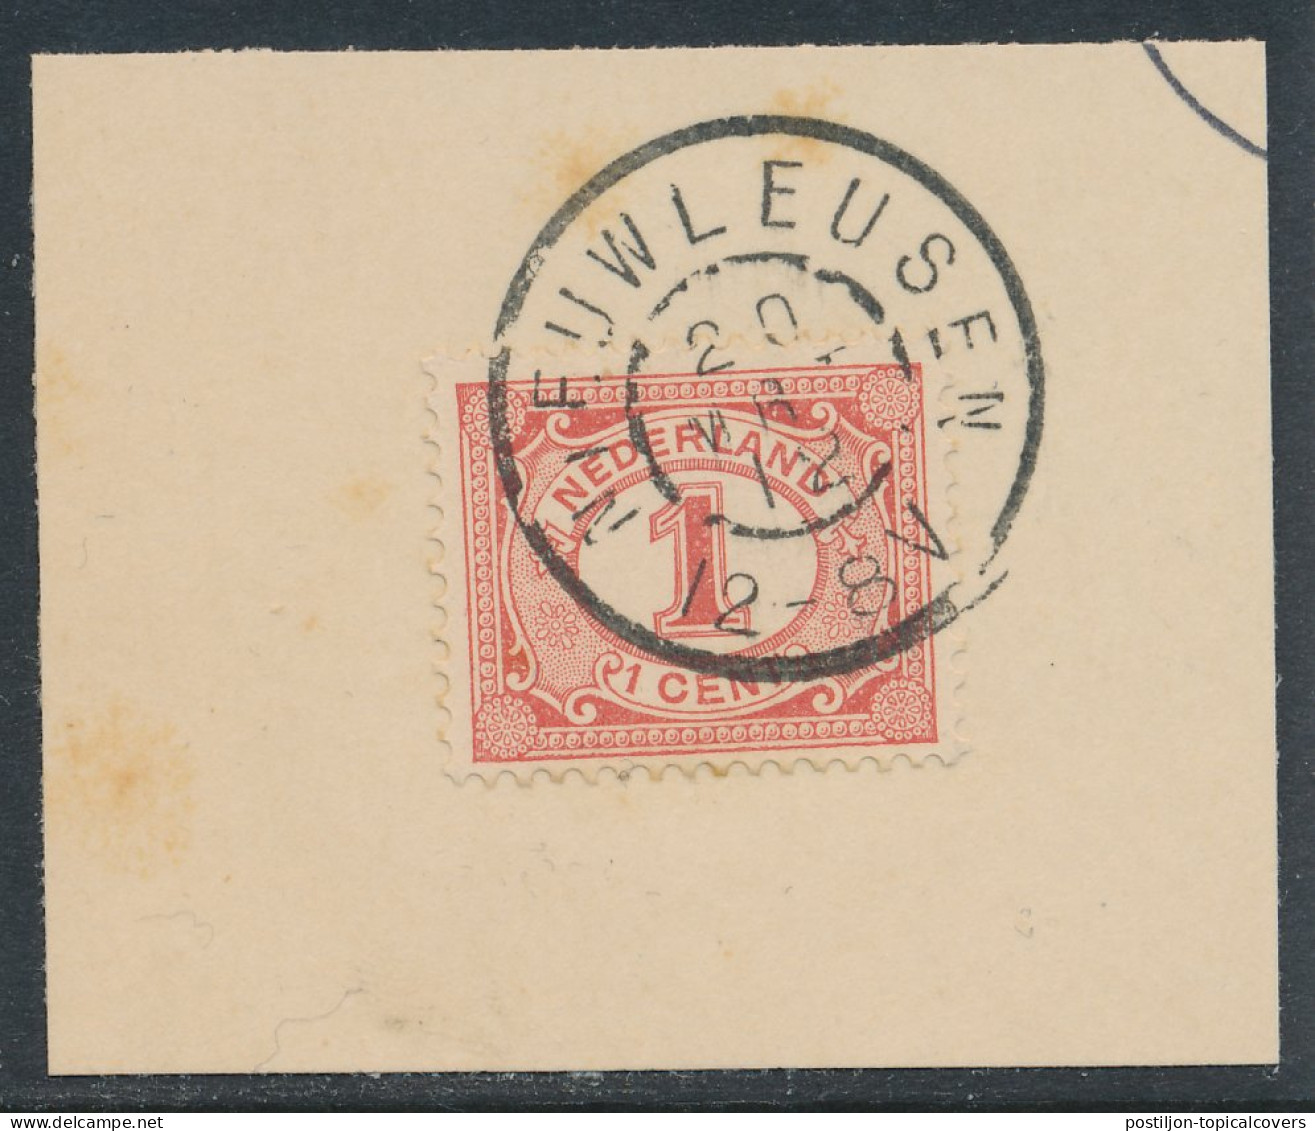 Grootrondstempel Nieuwleusen 1912 - Postal History